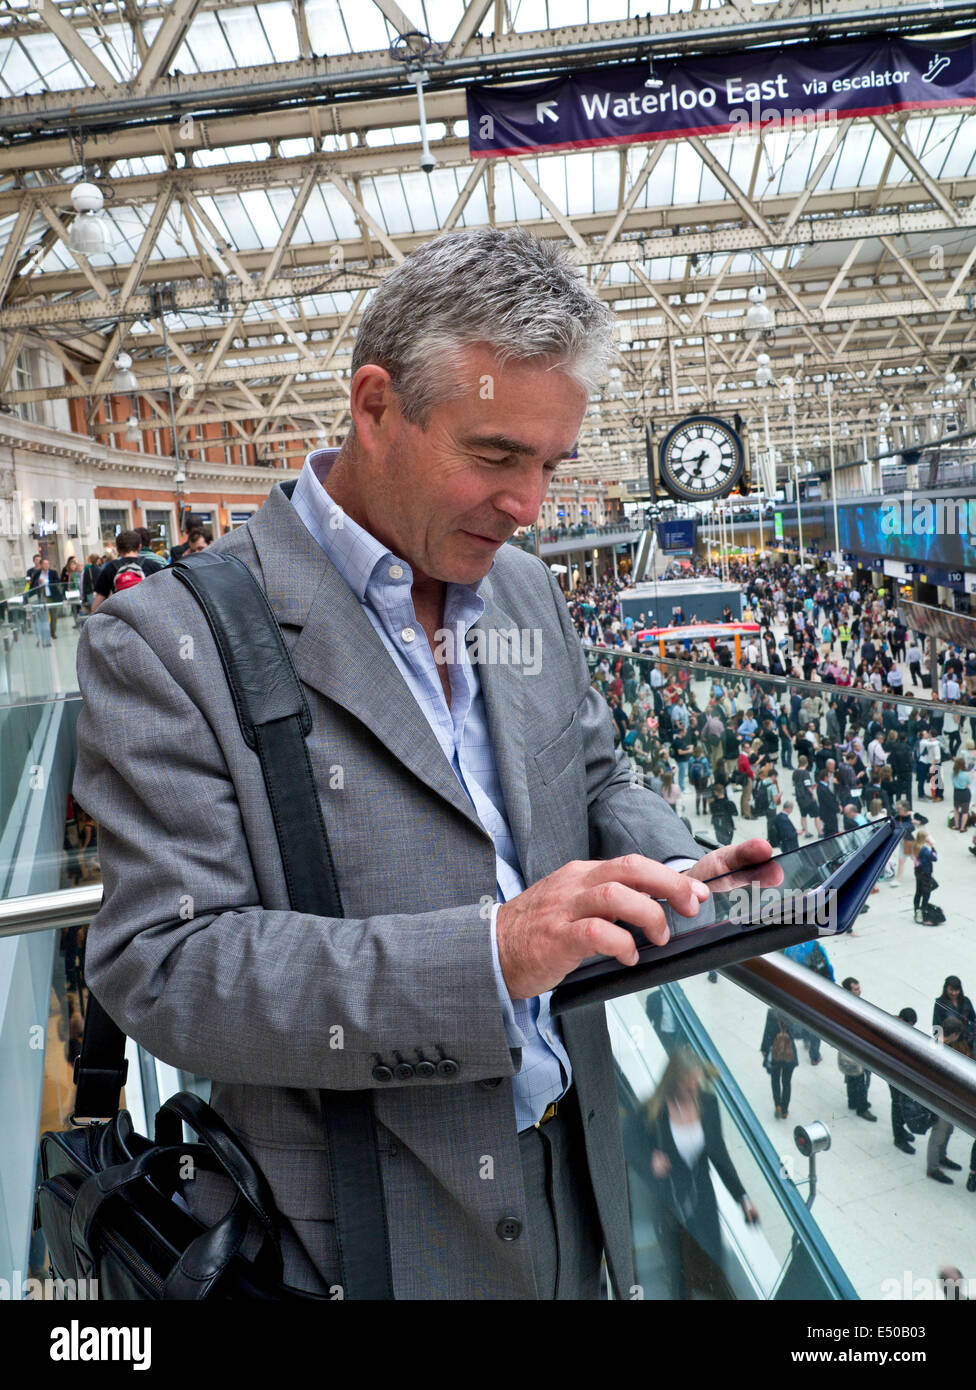 IPad Stazione ferroviaria uomo d'affari maturo alla stazione ferroviaria di Londra Waterloo usando il suo computer tablet iPad Air 'in movimento' con pendolari dietro Foto Stock